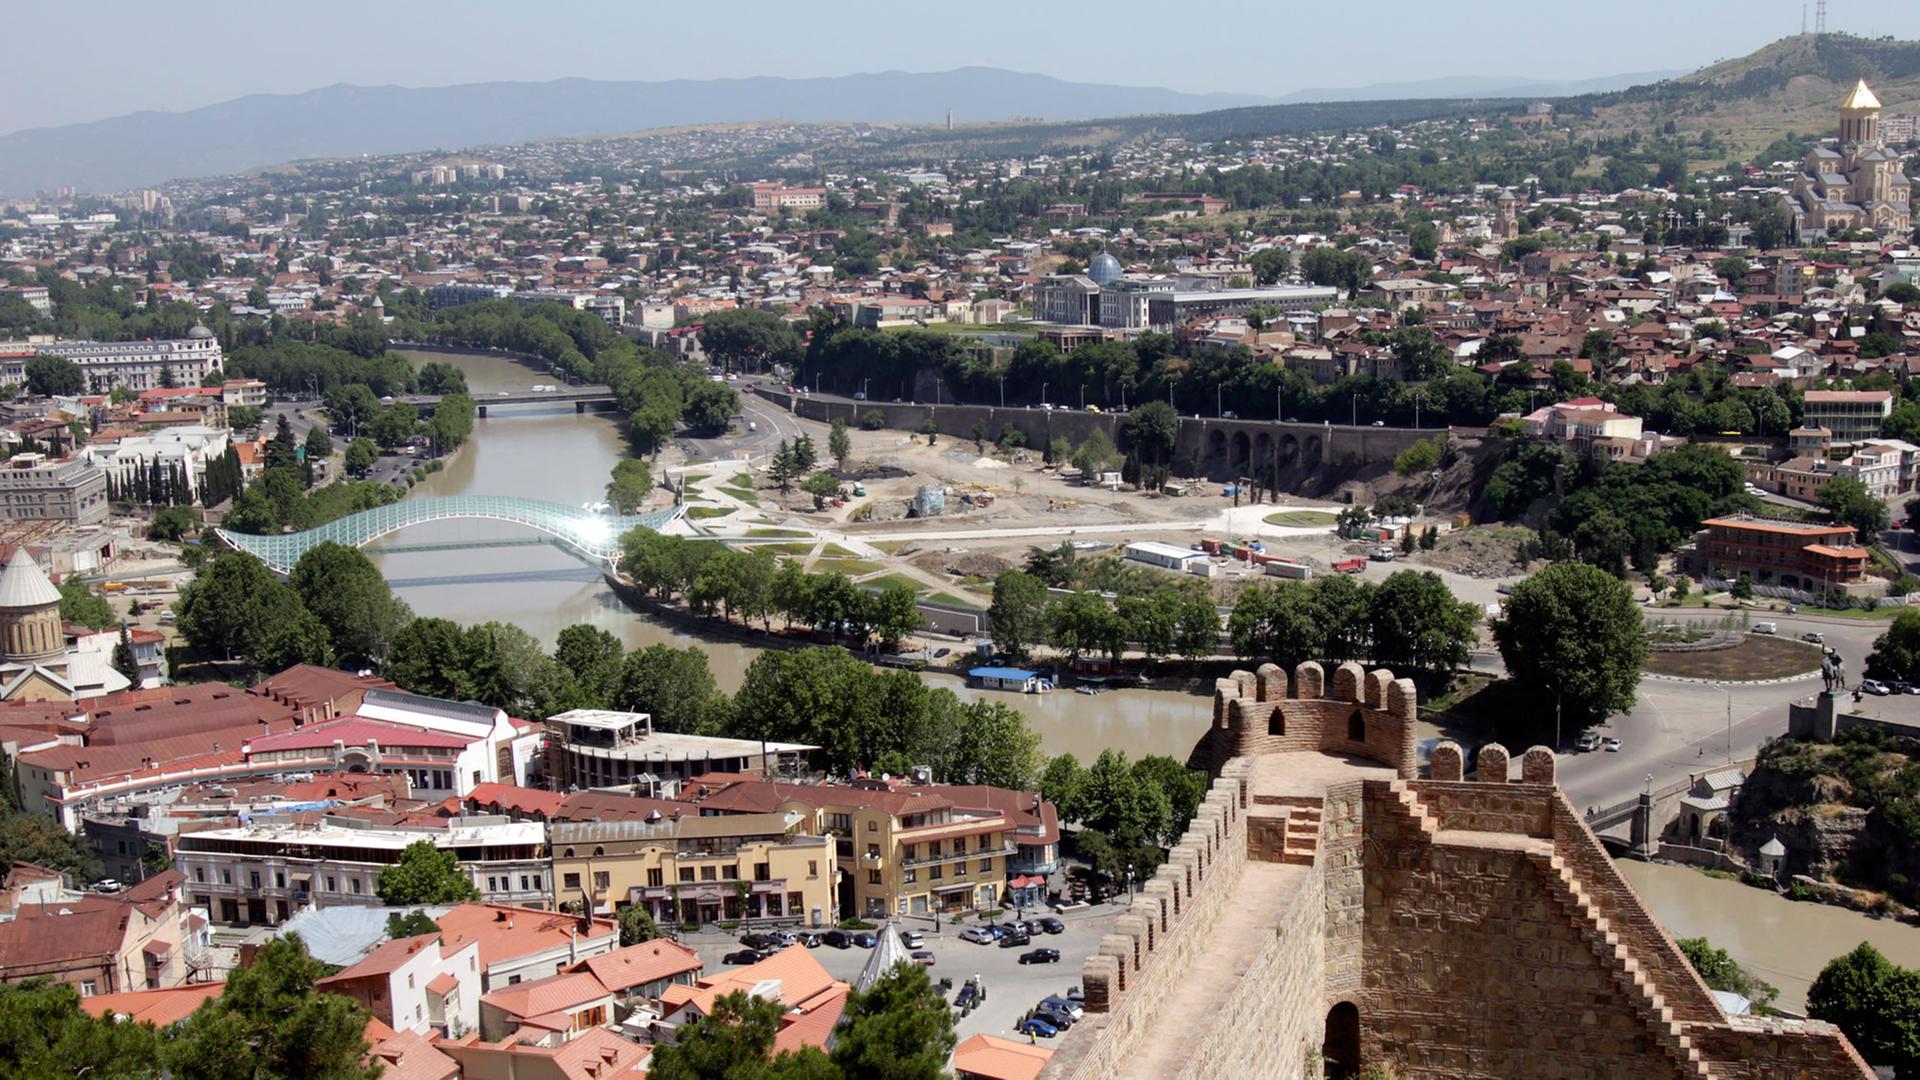 Blick über die georgische Hauptstadt Tiflis (Tbilisi), aufgenommen am 14.06.2010